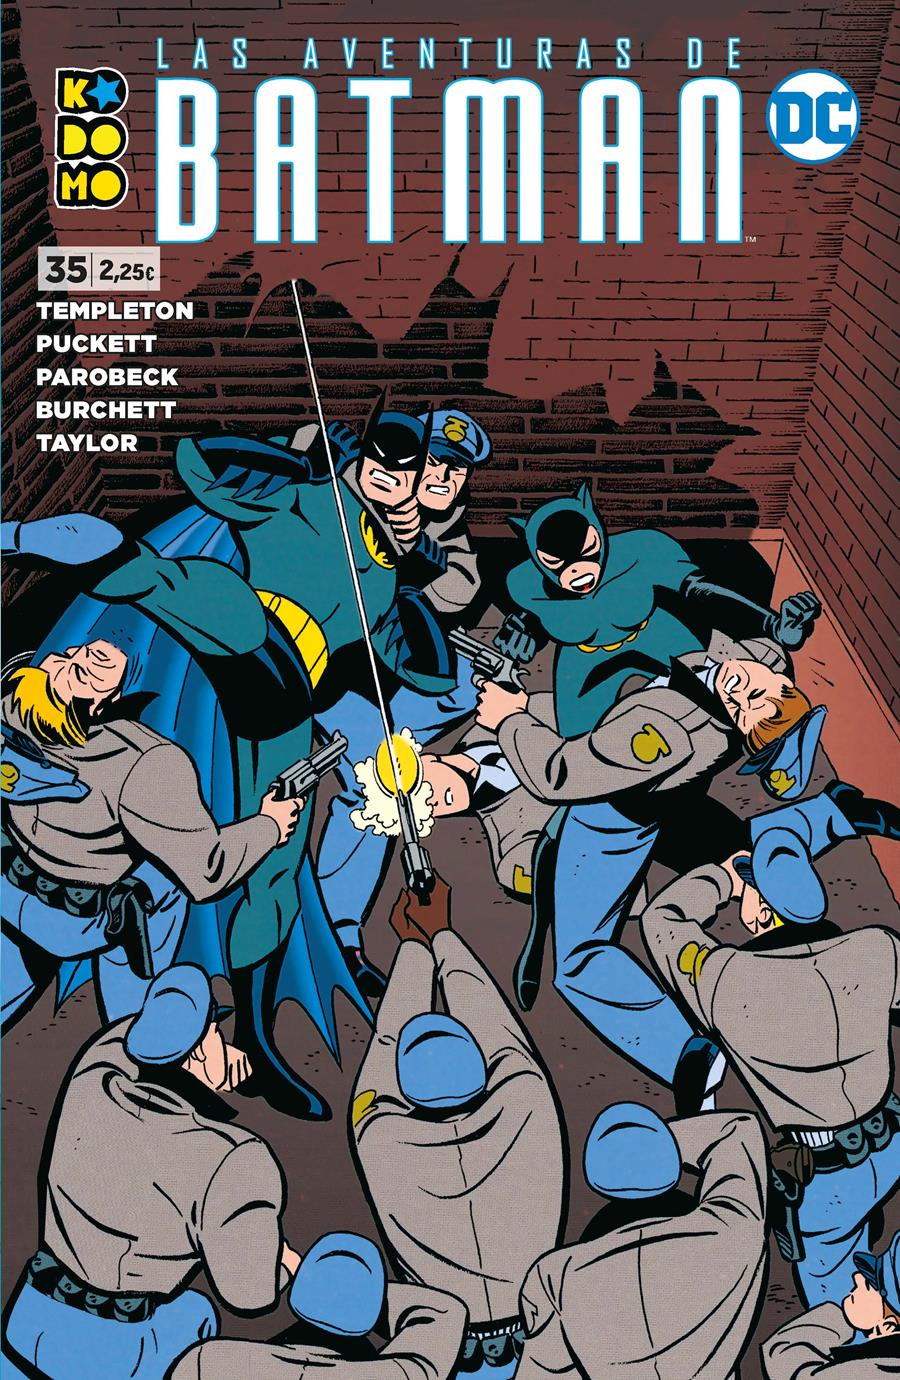 Las aventuras de Batman núm. 35 | N0122-ECC51 | Kelley Puckett / Rick Taylor | Terra de Còmic - Tu tienda de cómics online especializada en cómics, manga y merchandising